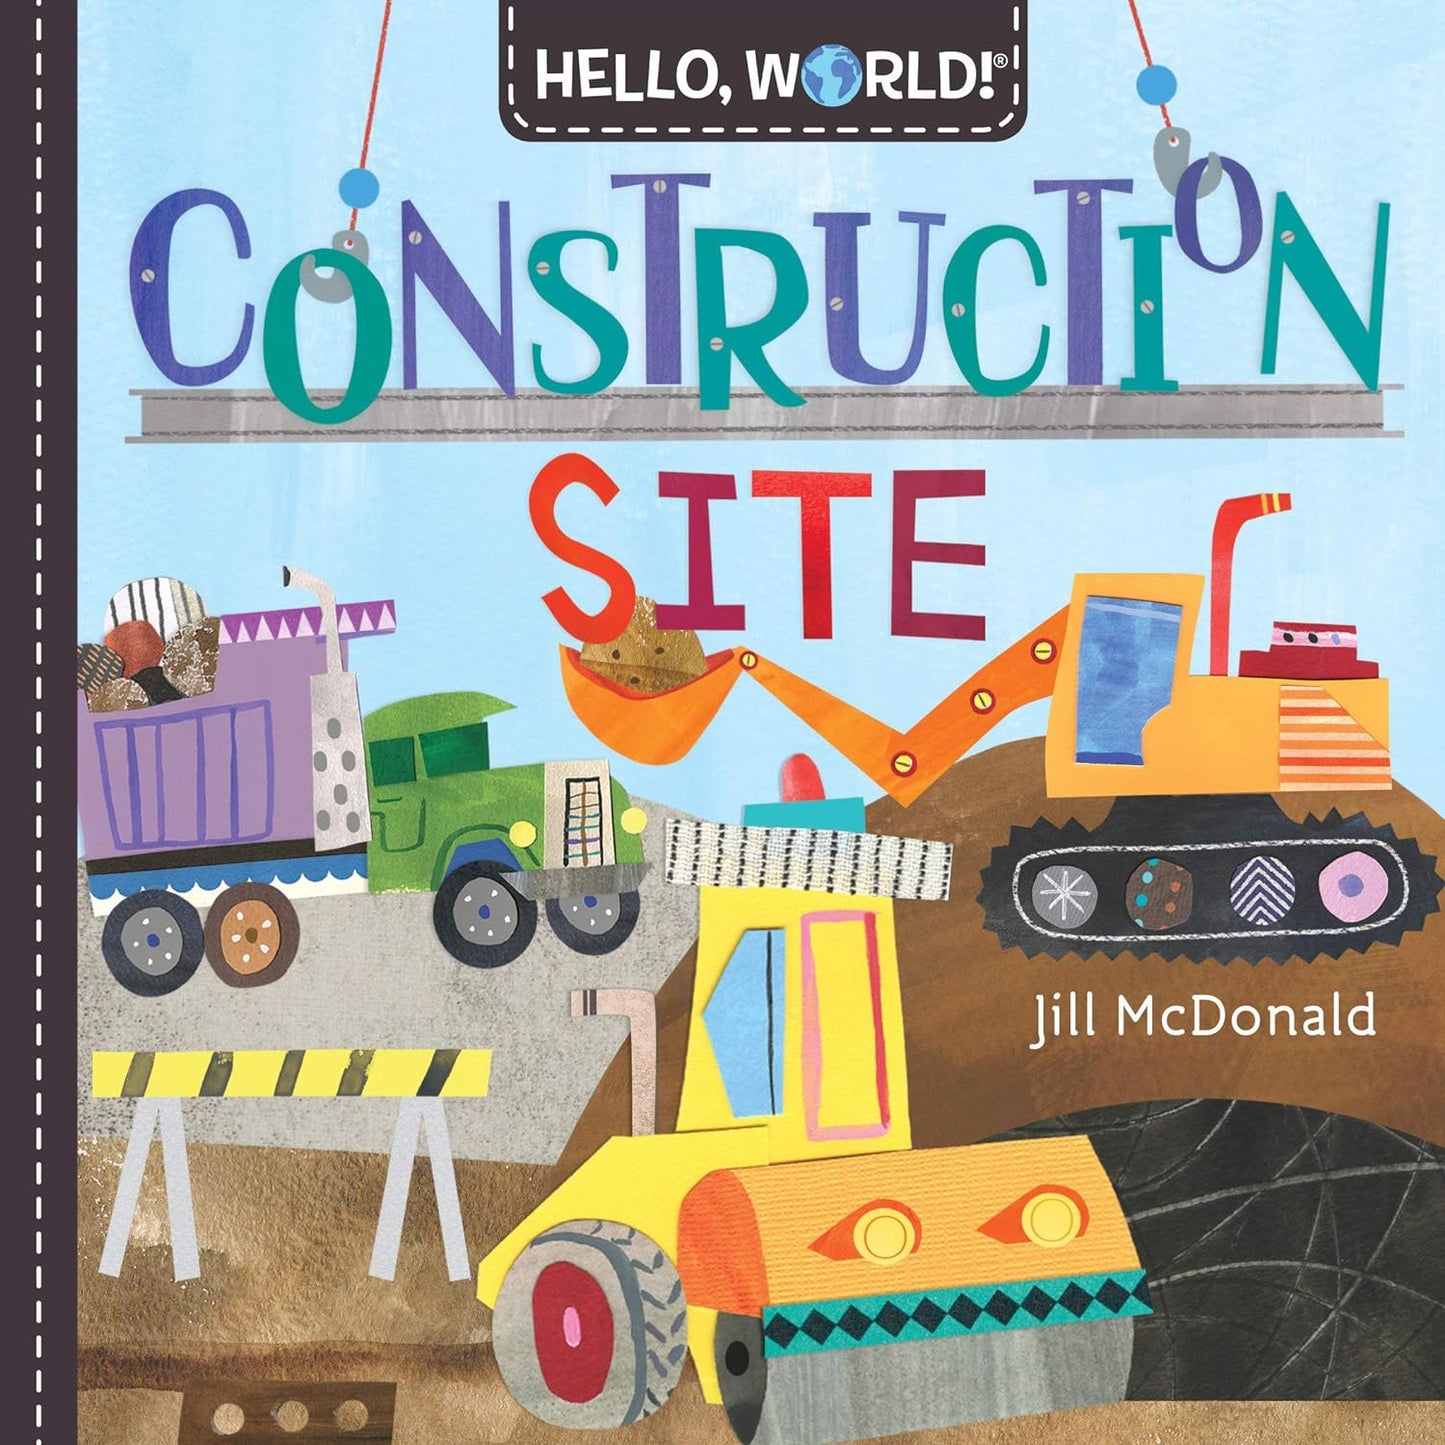 Hello, World! Construction Site - New Board Book